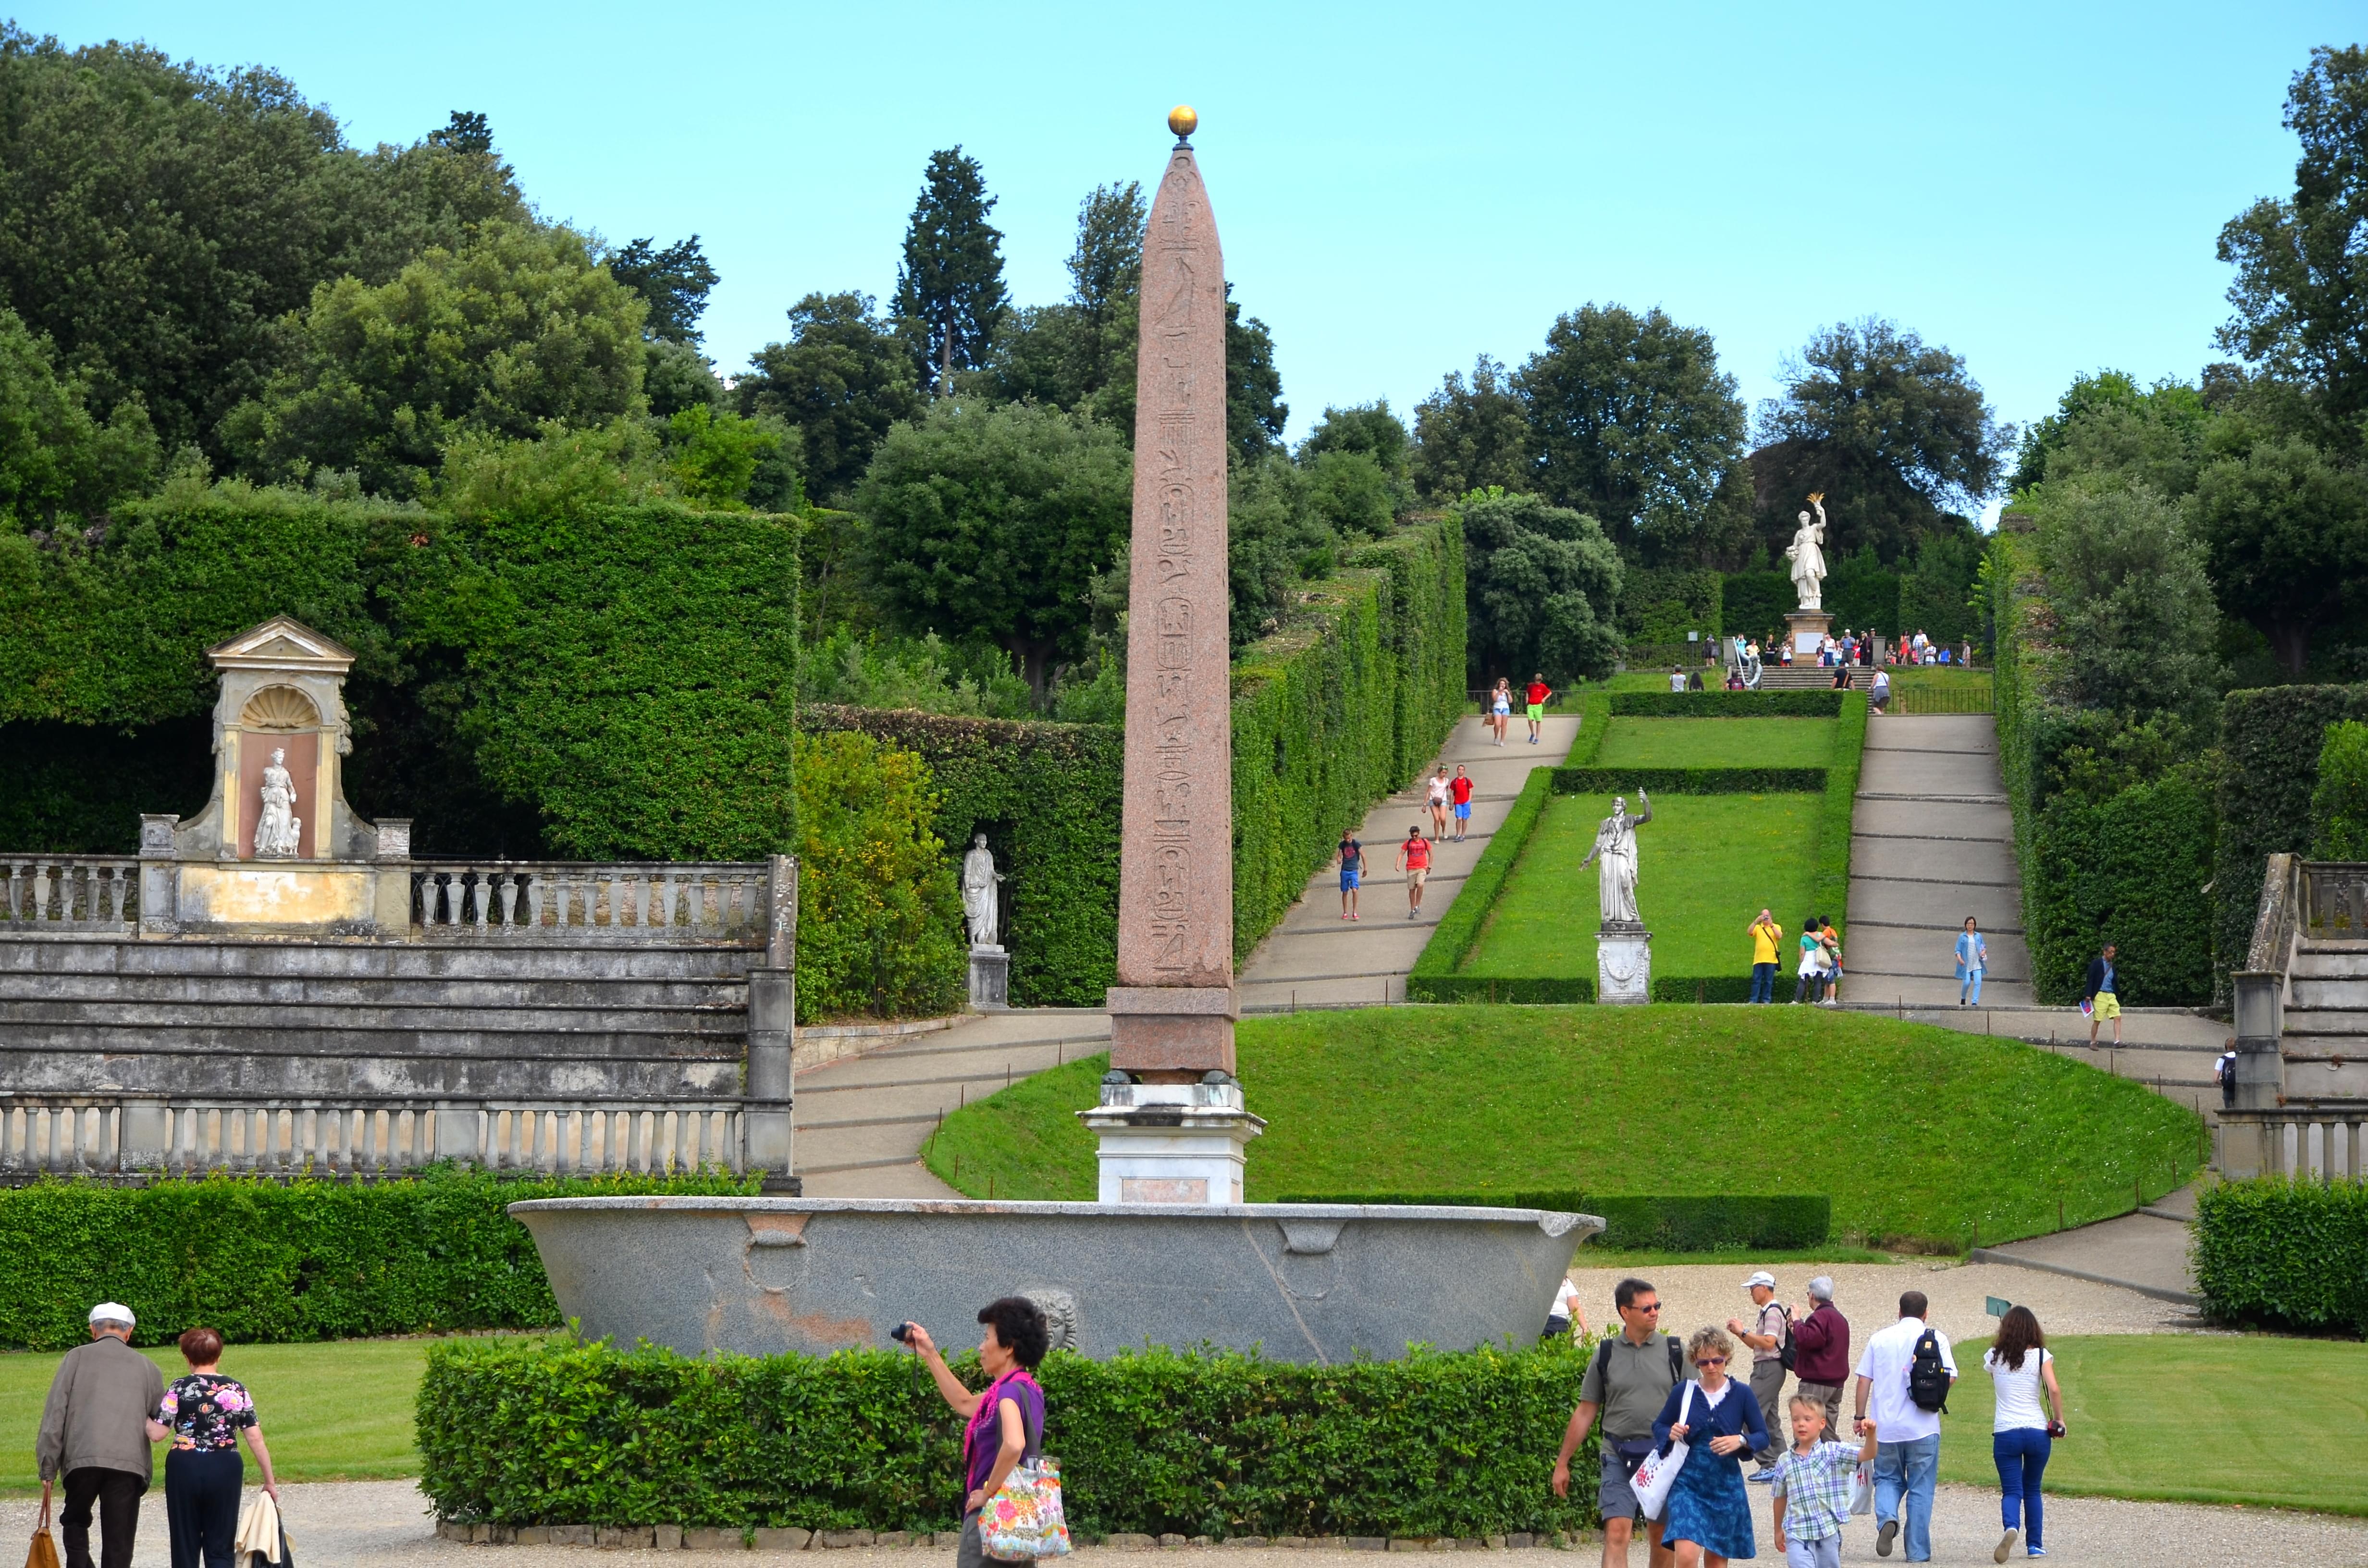 Architecture and landscape of the Boboli Gardens